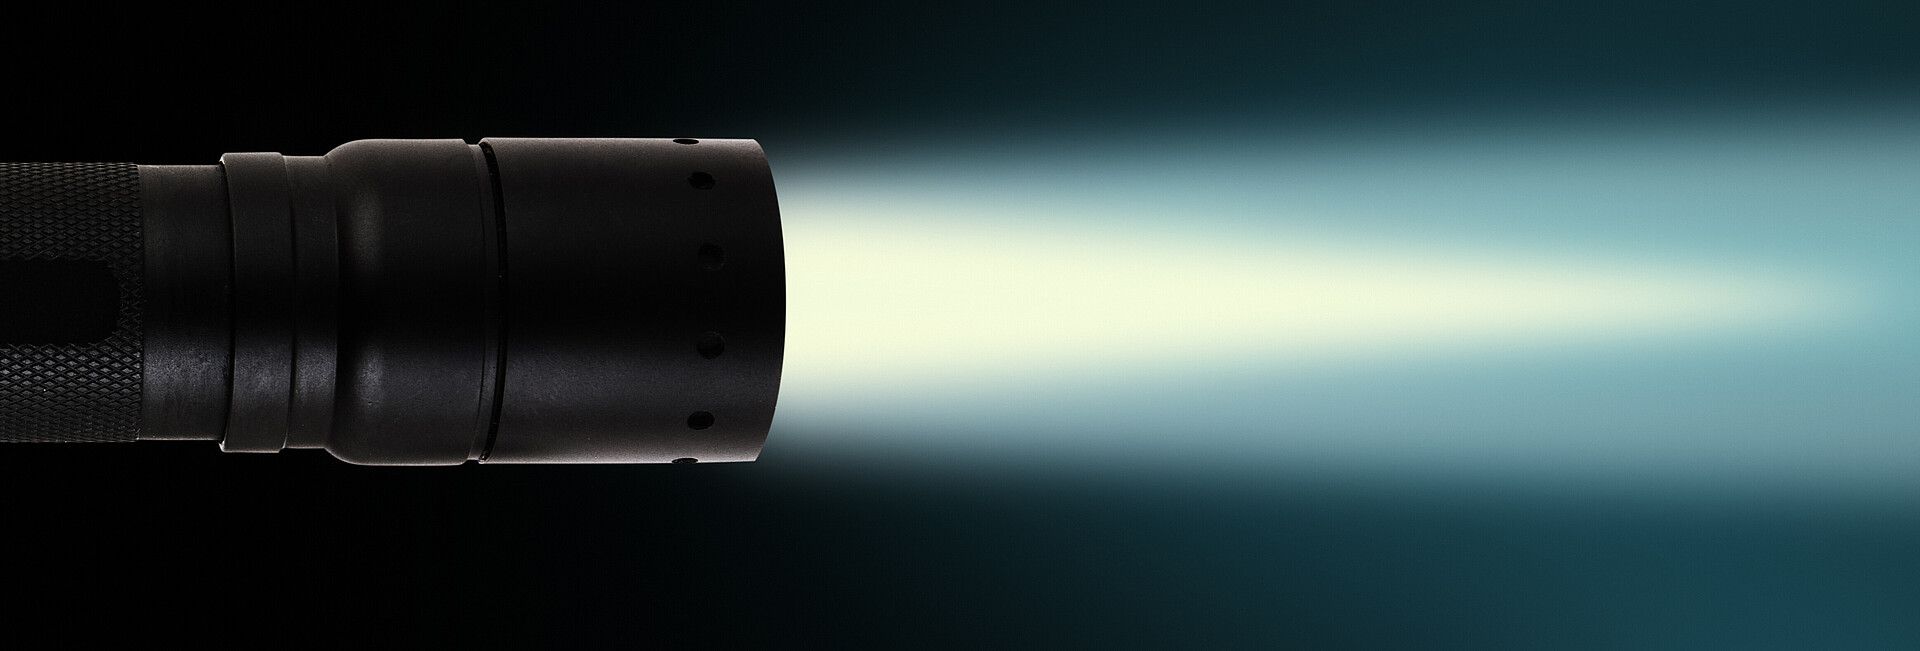 LED Taschenlampe vor schwarzem Hintergrund